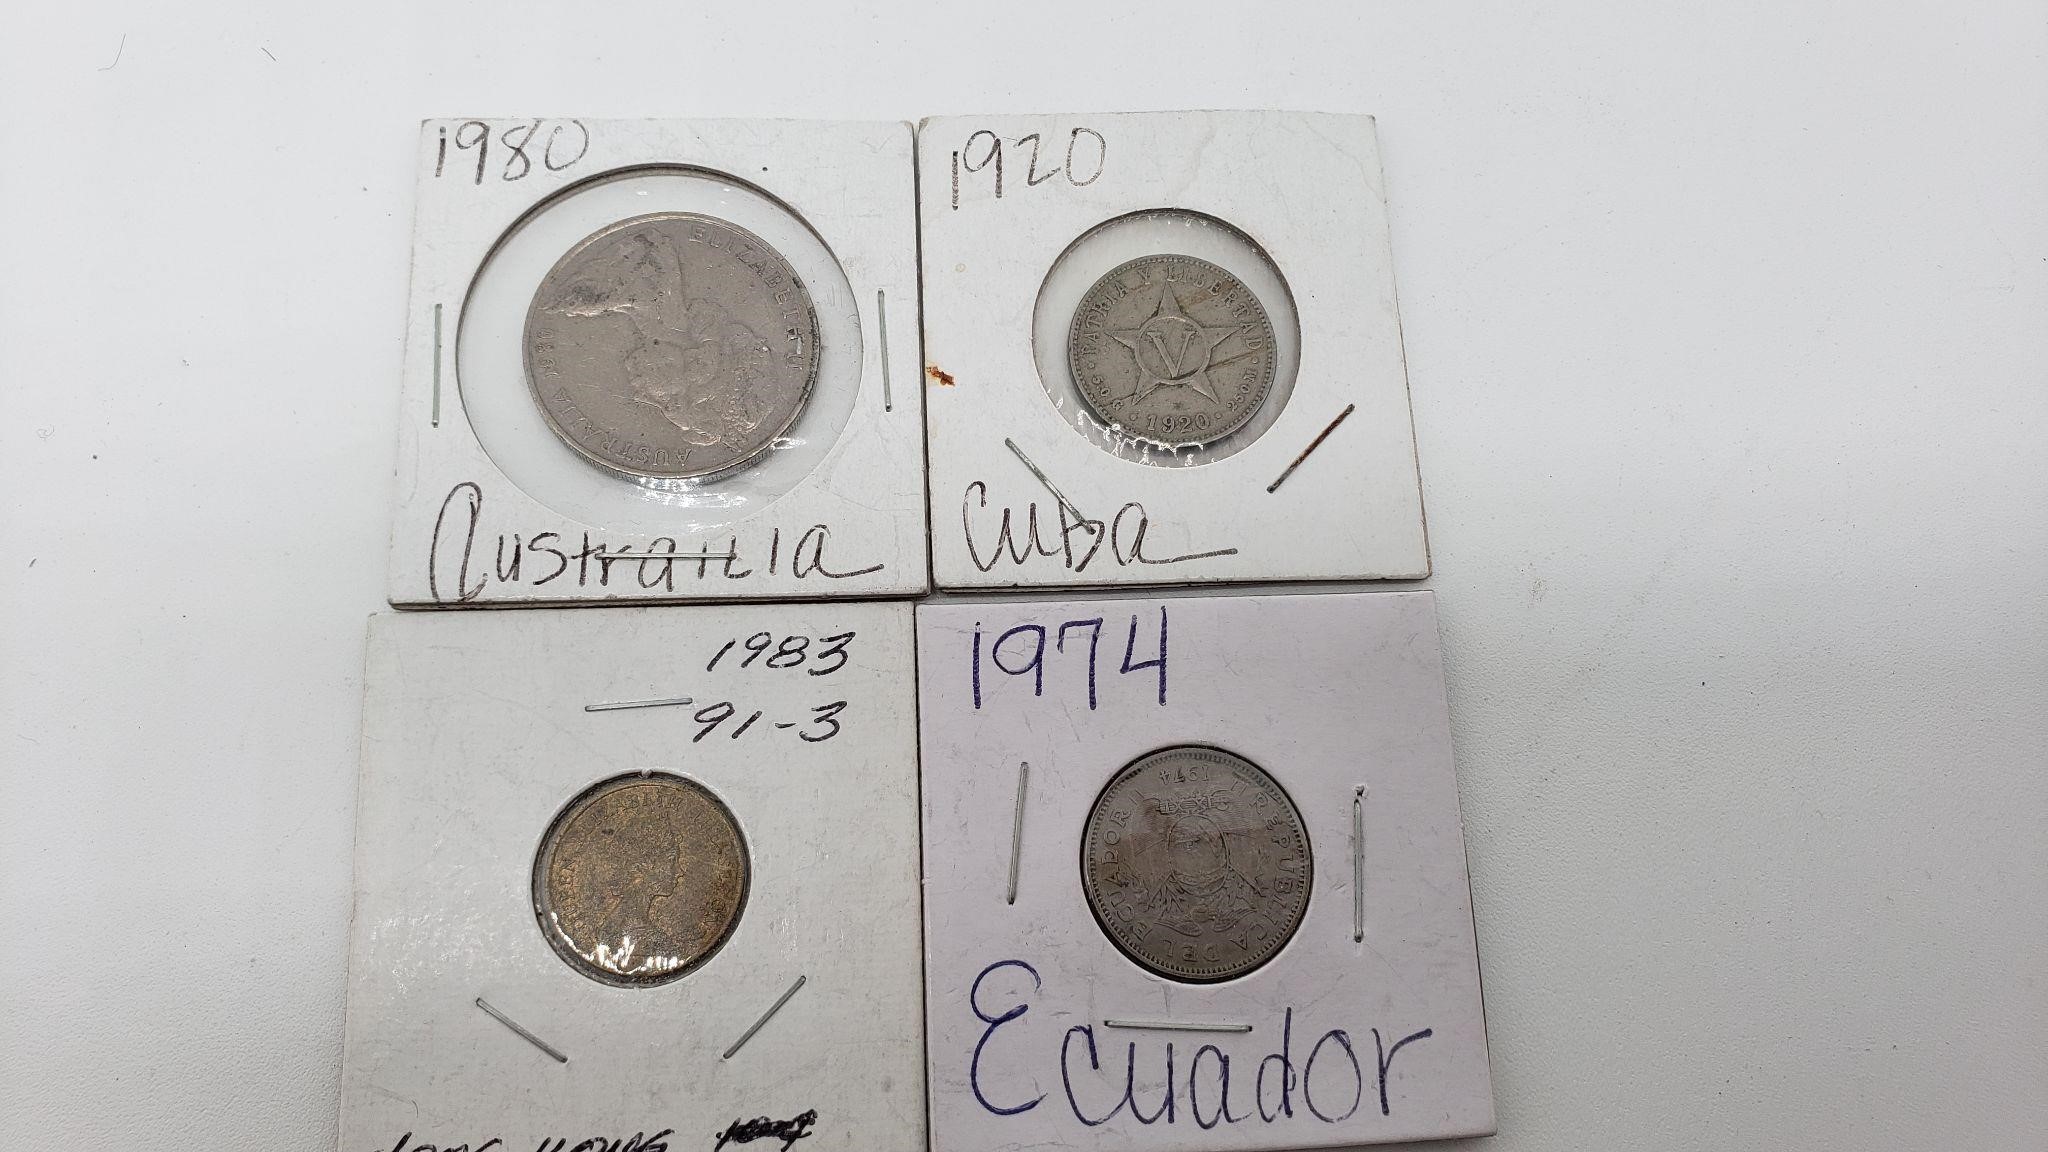 Coins Australia, 1920 Cuba, Hong Kong, 74 Ecuador